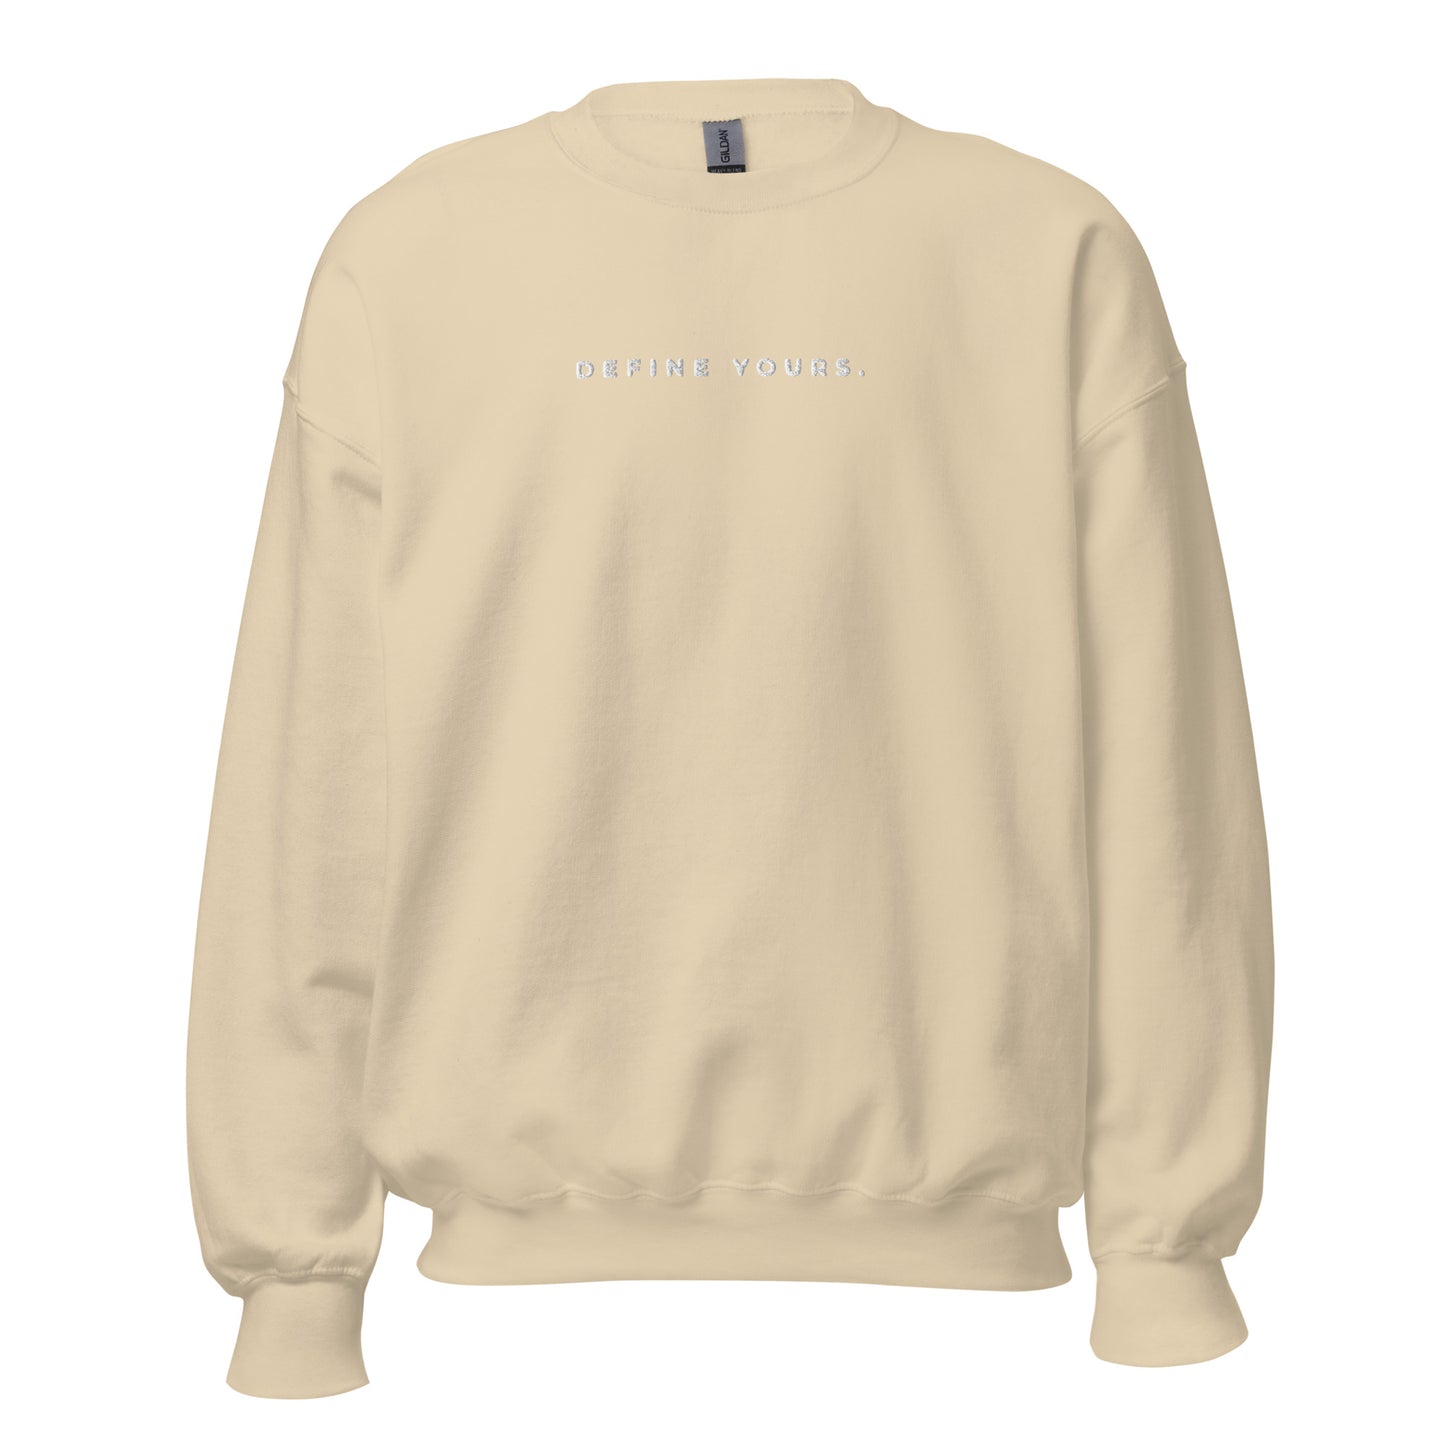 Define Yours Embroidered Unisex Sweatshirt